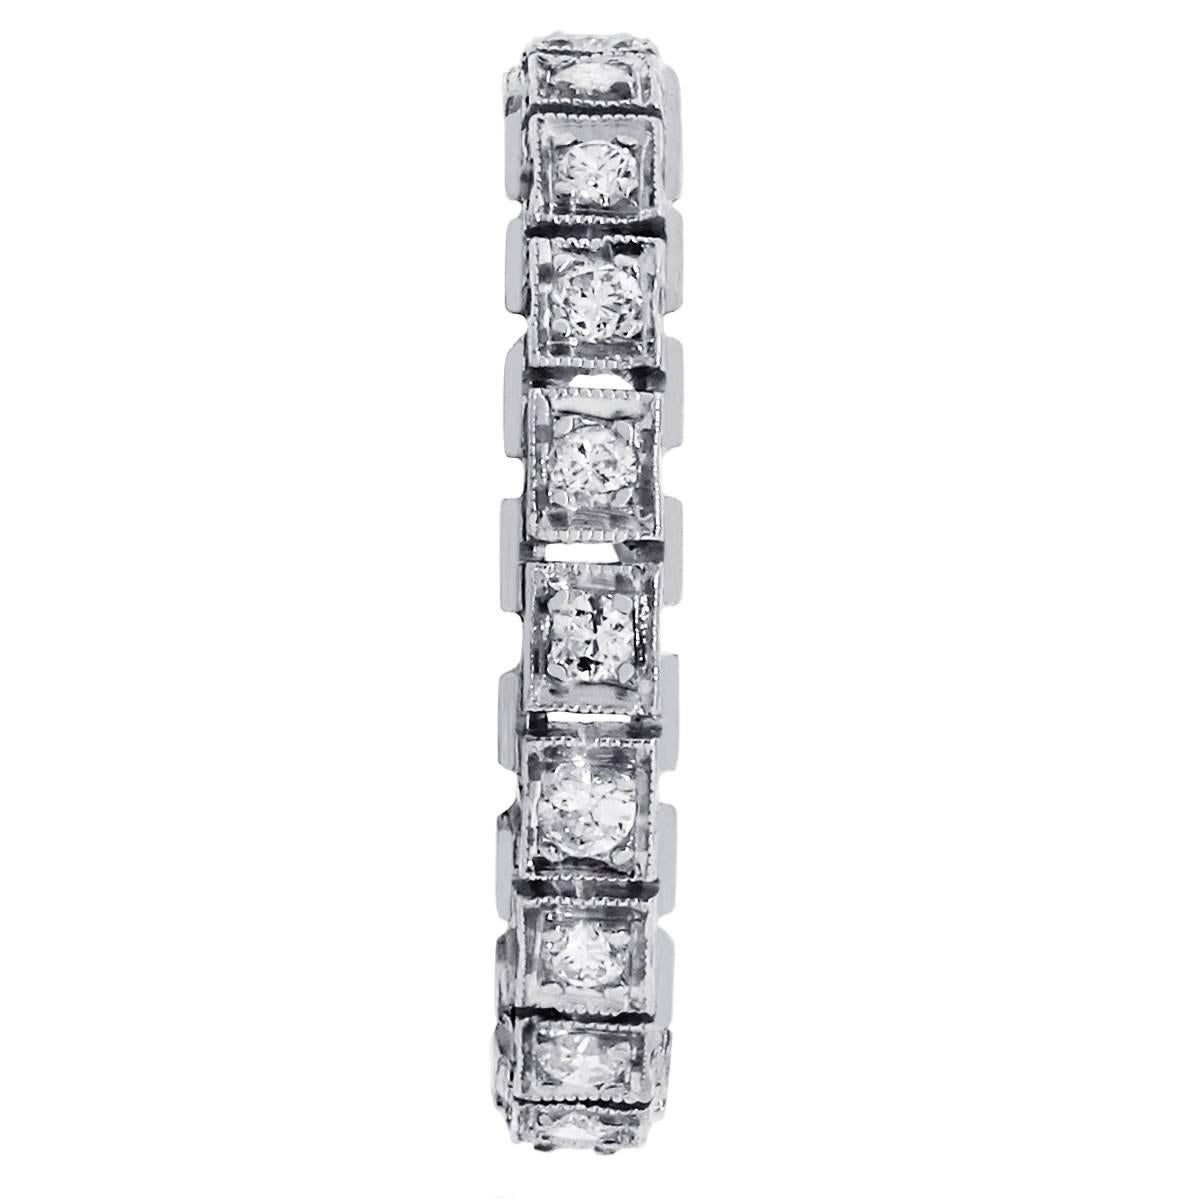 Matériau : Platine
Détails des diamants : Environ 0,45ctw de diamants ronds et brillants. Les diamants sont de couleur H/I et de pureté SI
Taille de lla bague : 6
Mesures de l'anneau : 0.90″ x 0.20″ x 0.90″
Poids total : 3.5g (2.3dwt)
SKU : G7013